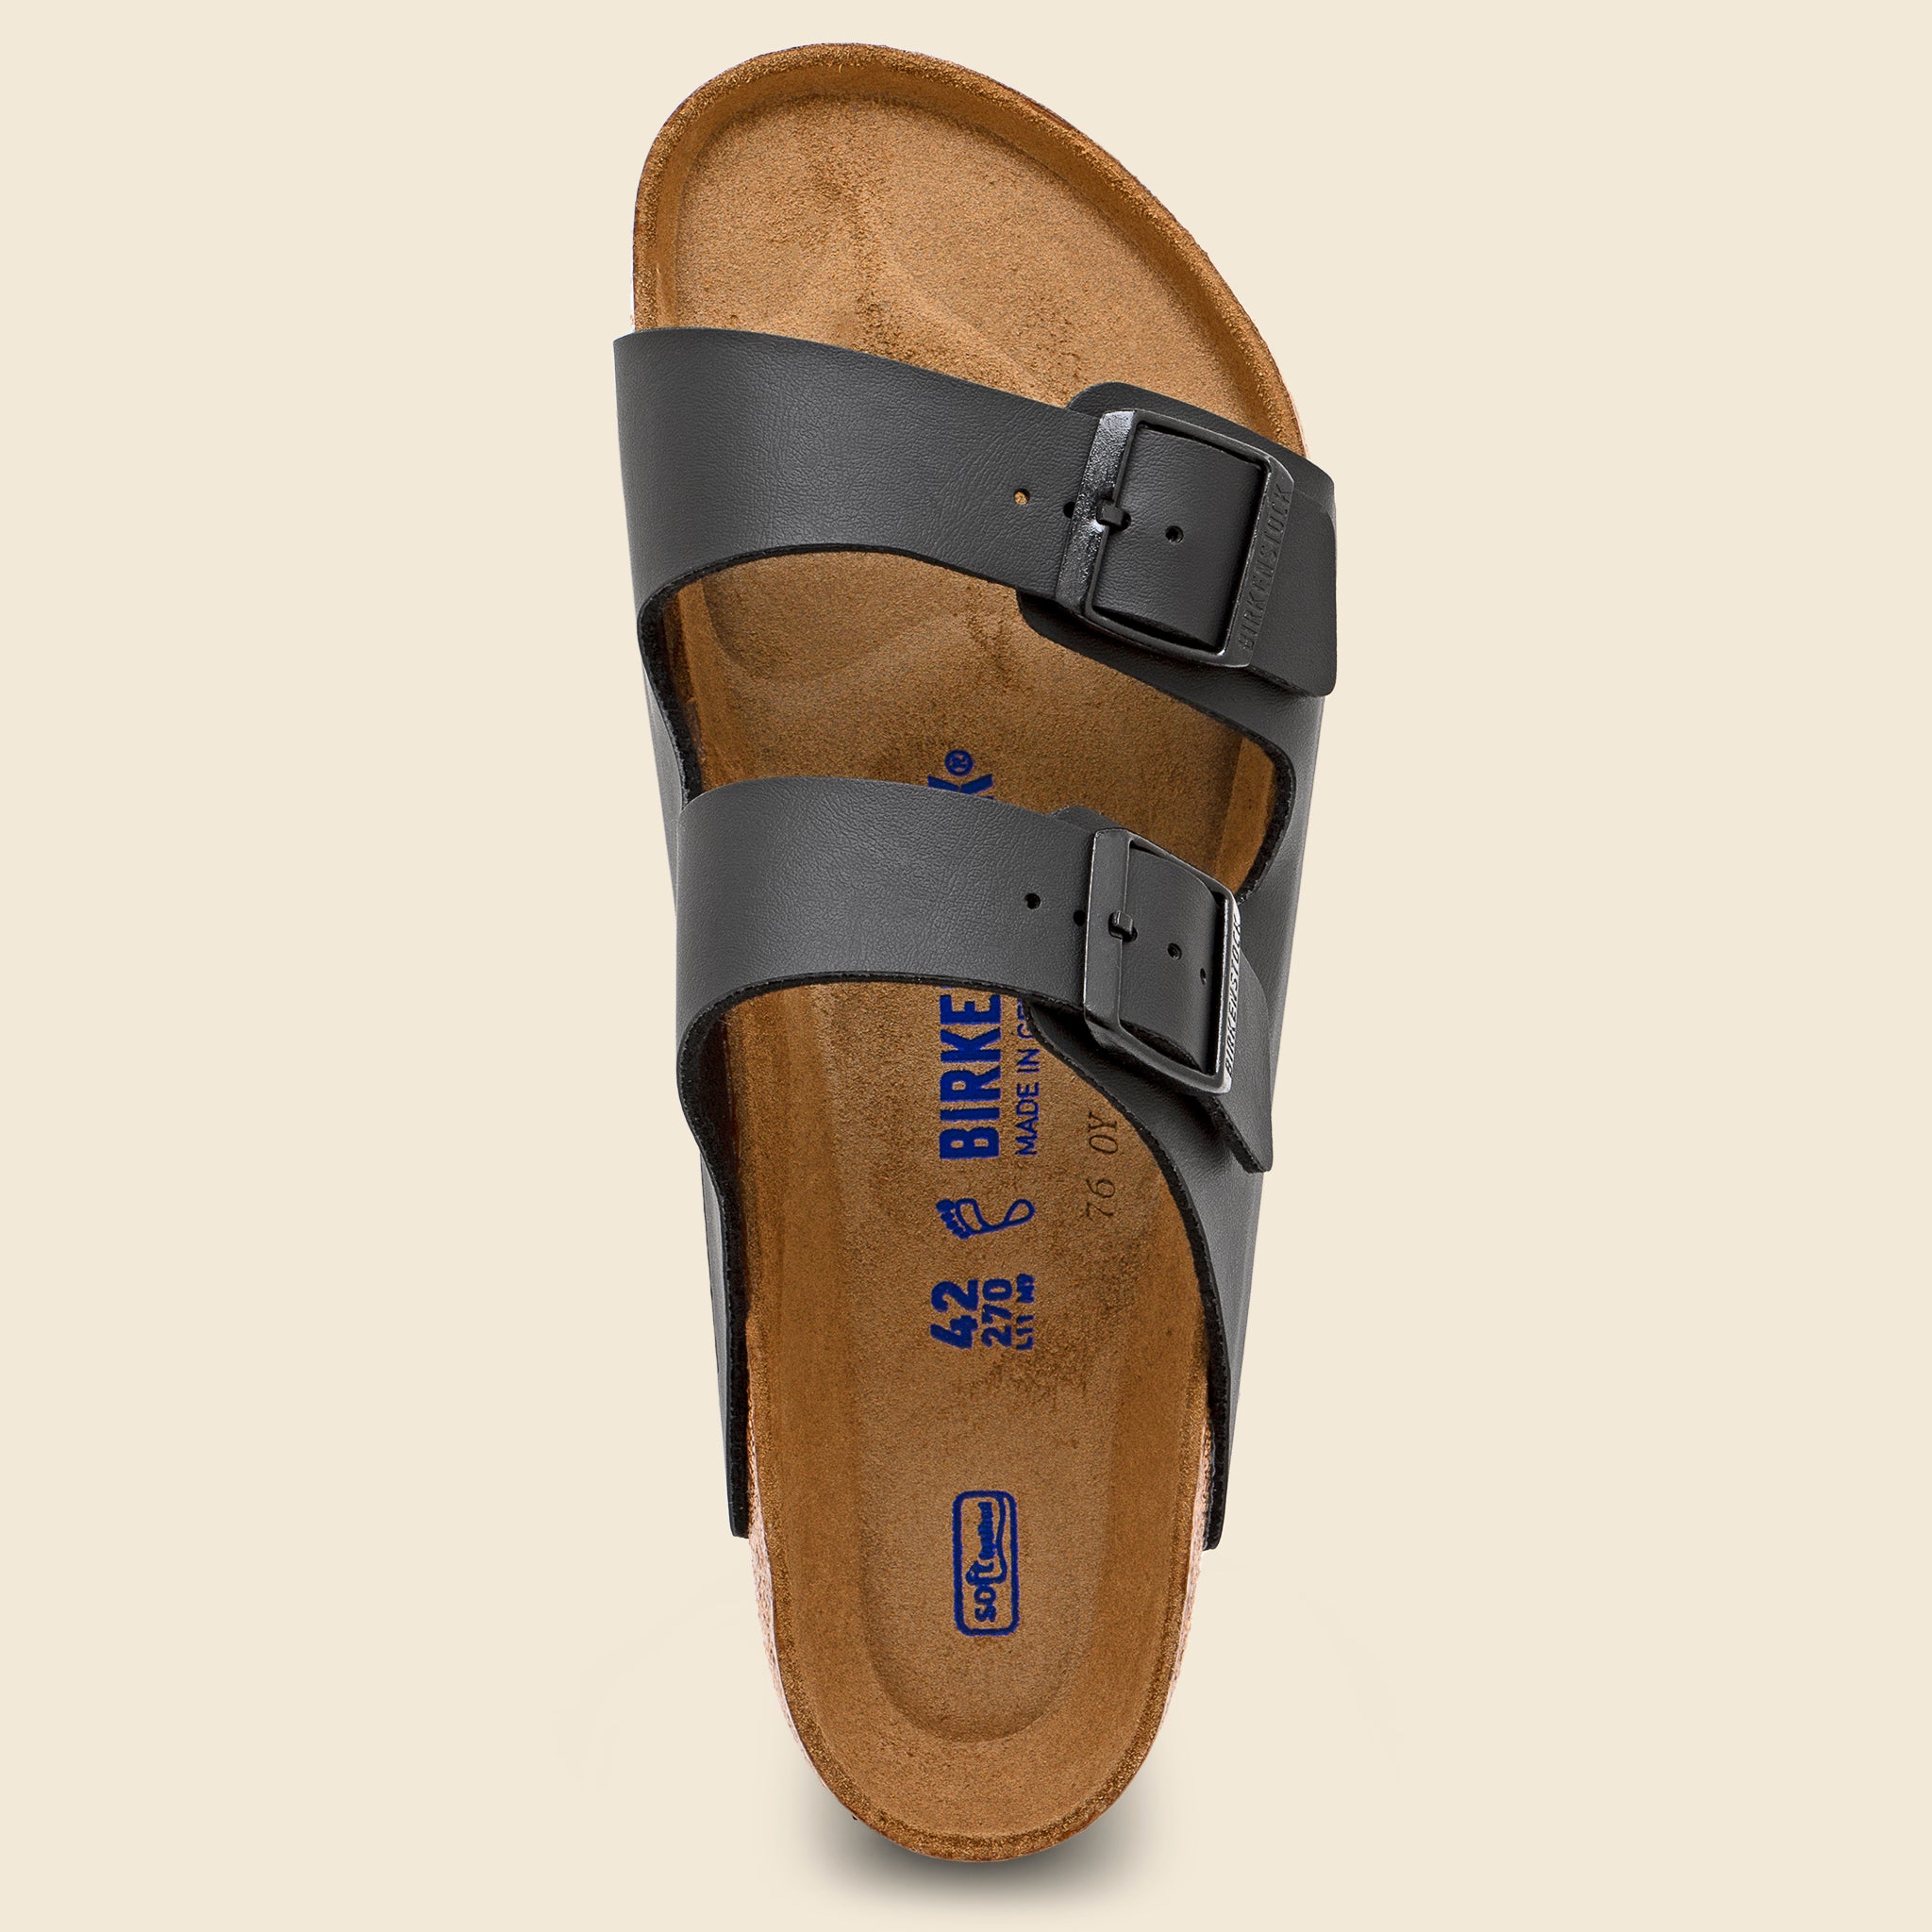 Arizona Birko Flor Sandal - Black - Birkenstock - STAG Provisions - Shoes - Sandals / Flops